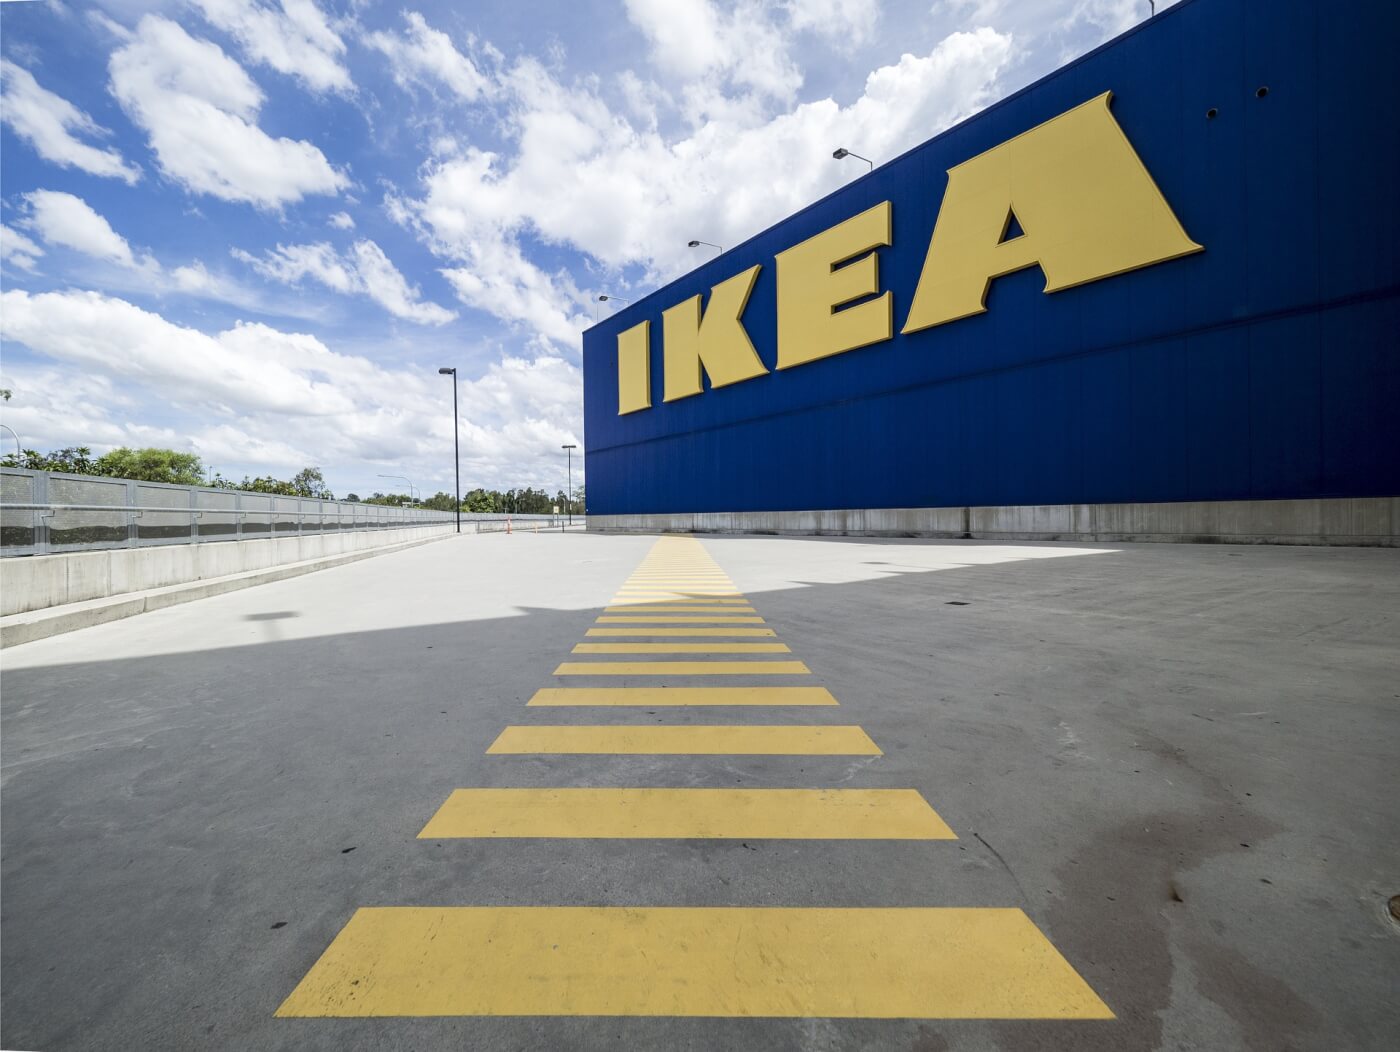 IKEA kondigt nieuwe vegan hotdog aan, en wij zijn er klaar voor